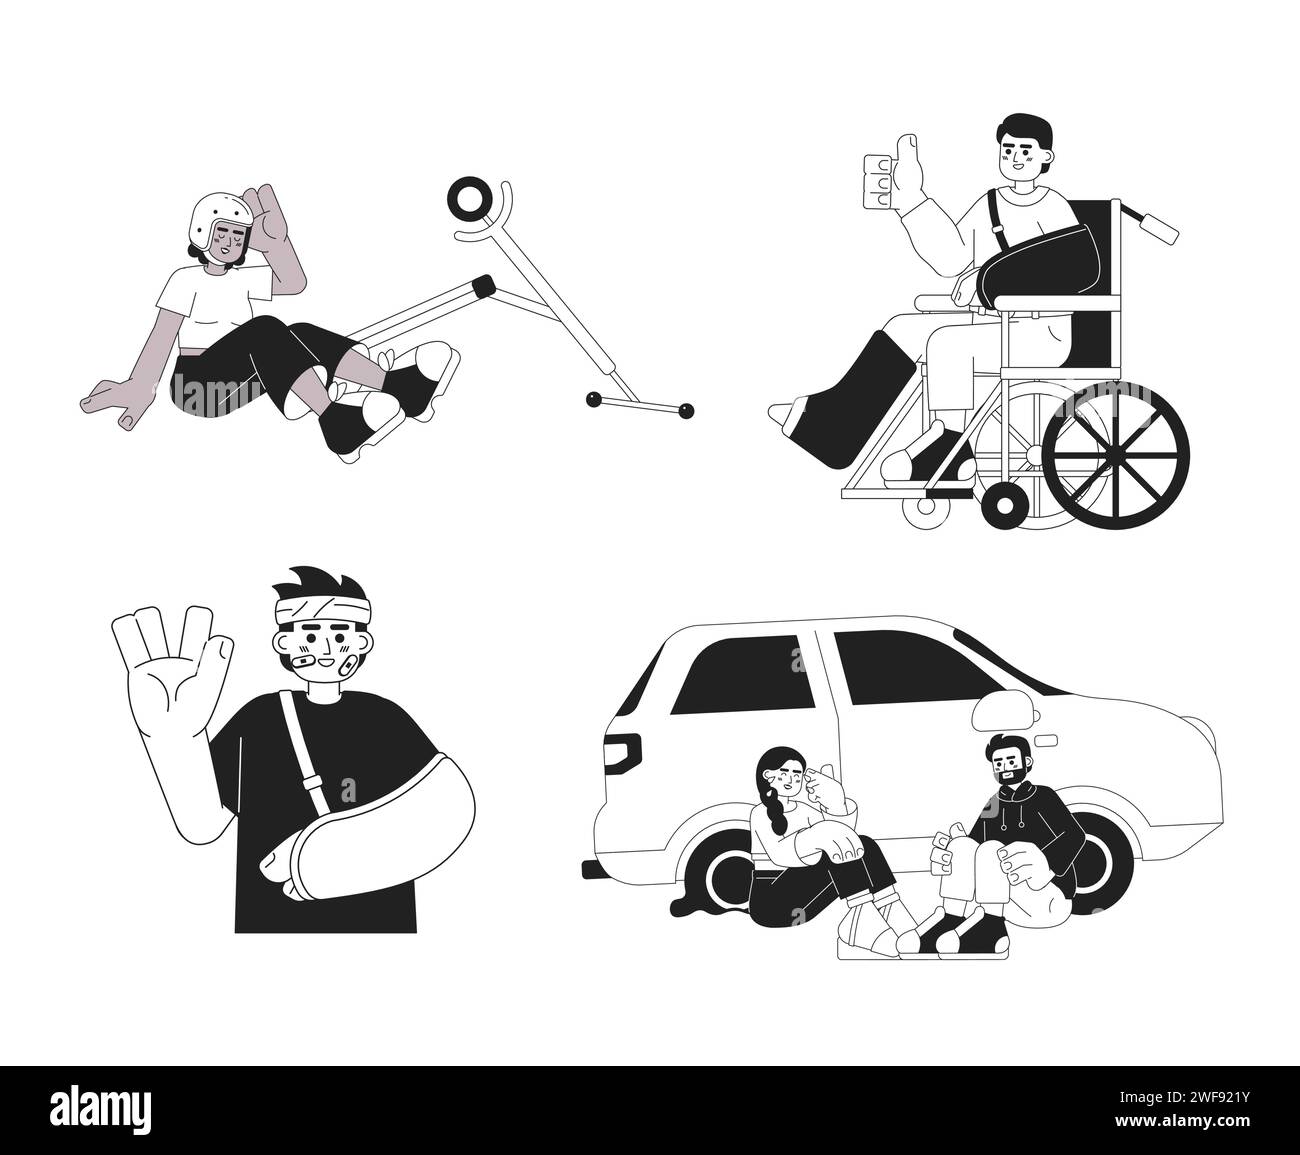 Glückliche Unfälle im täglichen Leben Schwarz-weiß-Zeichentrickfiguren-Set Stock Vektor